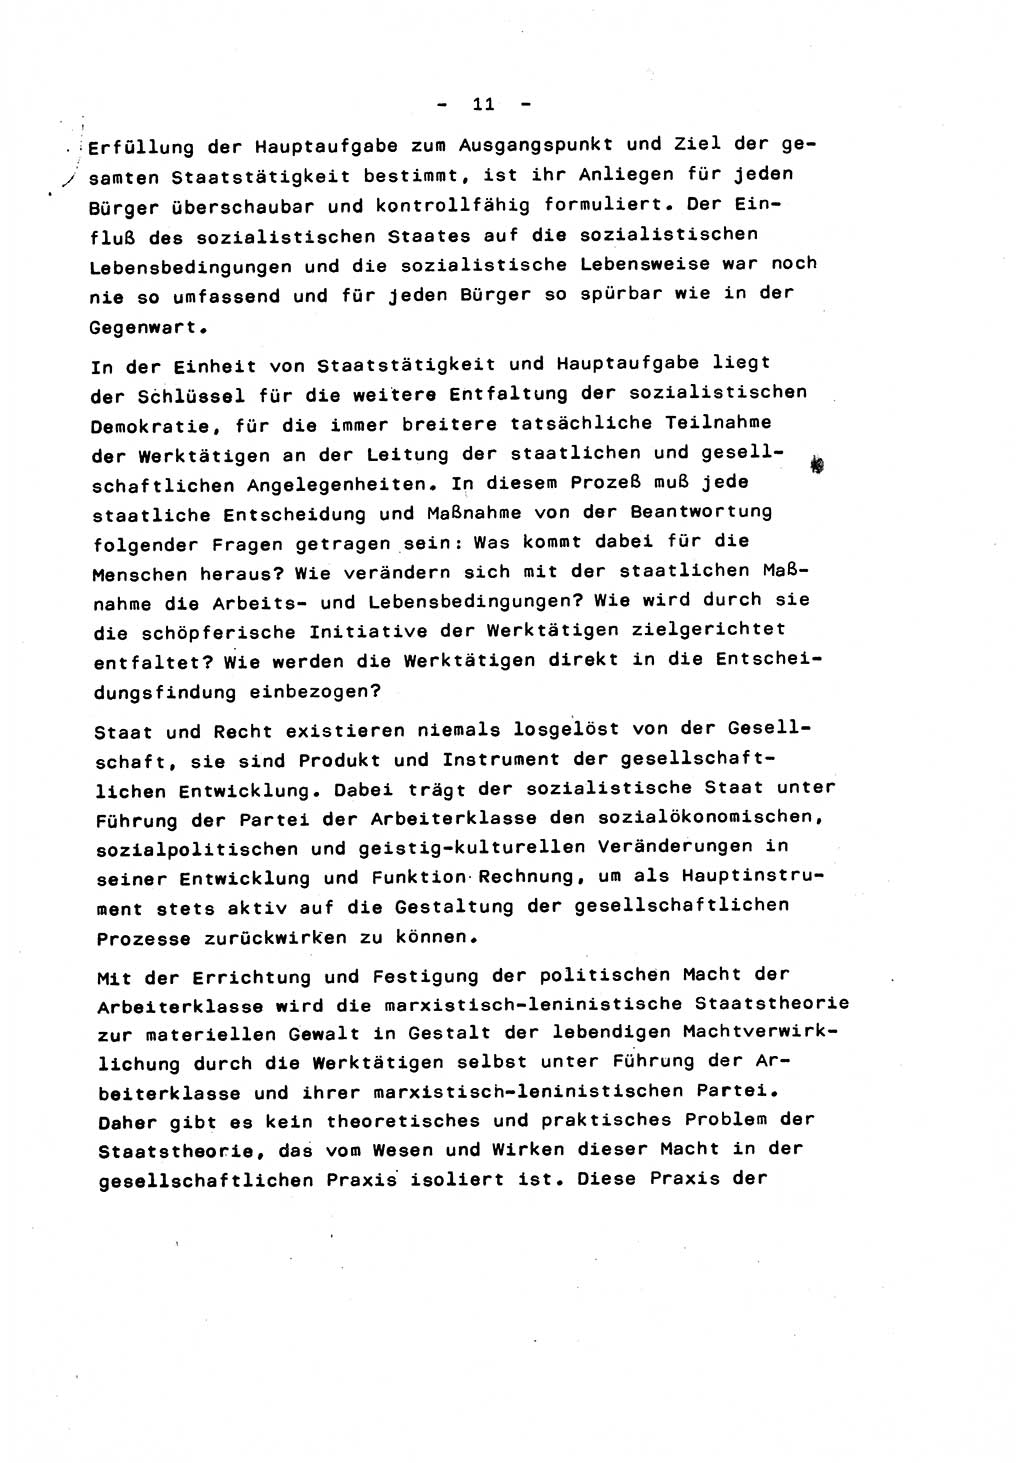 Marxistisch-leninistische Staats- und Rechtstheorie [Deutsche Demokratische Republik (DDR)] 1975, Seite 11 (ML St.-R.-Th. DDR 1975, S. 11)